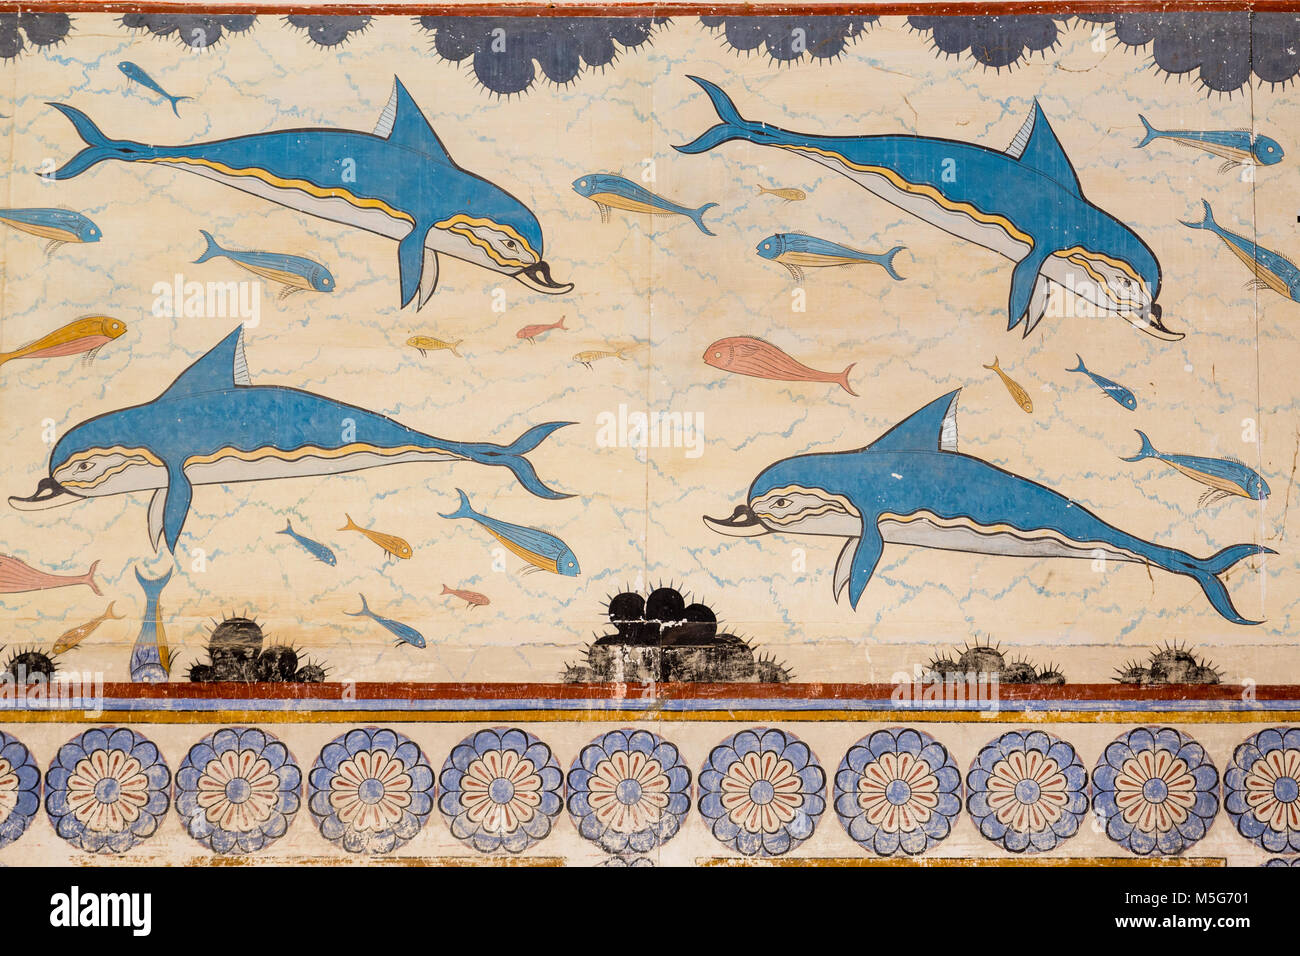 Fresque minoenne de Knossos dauphins sur l'île de Crète Banque D'Images